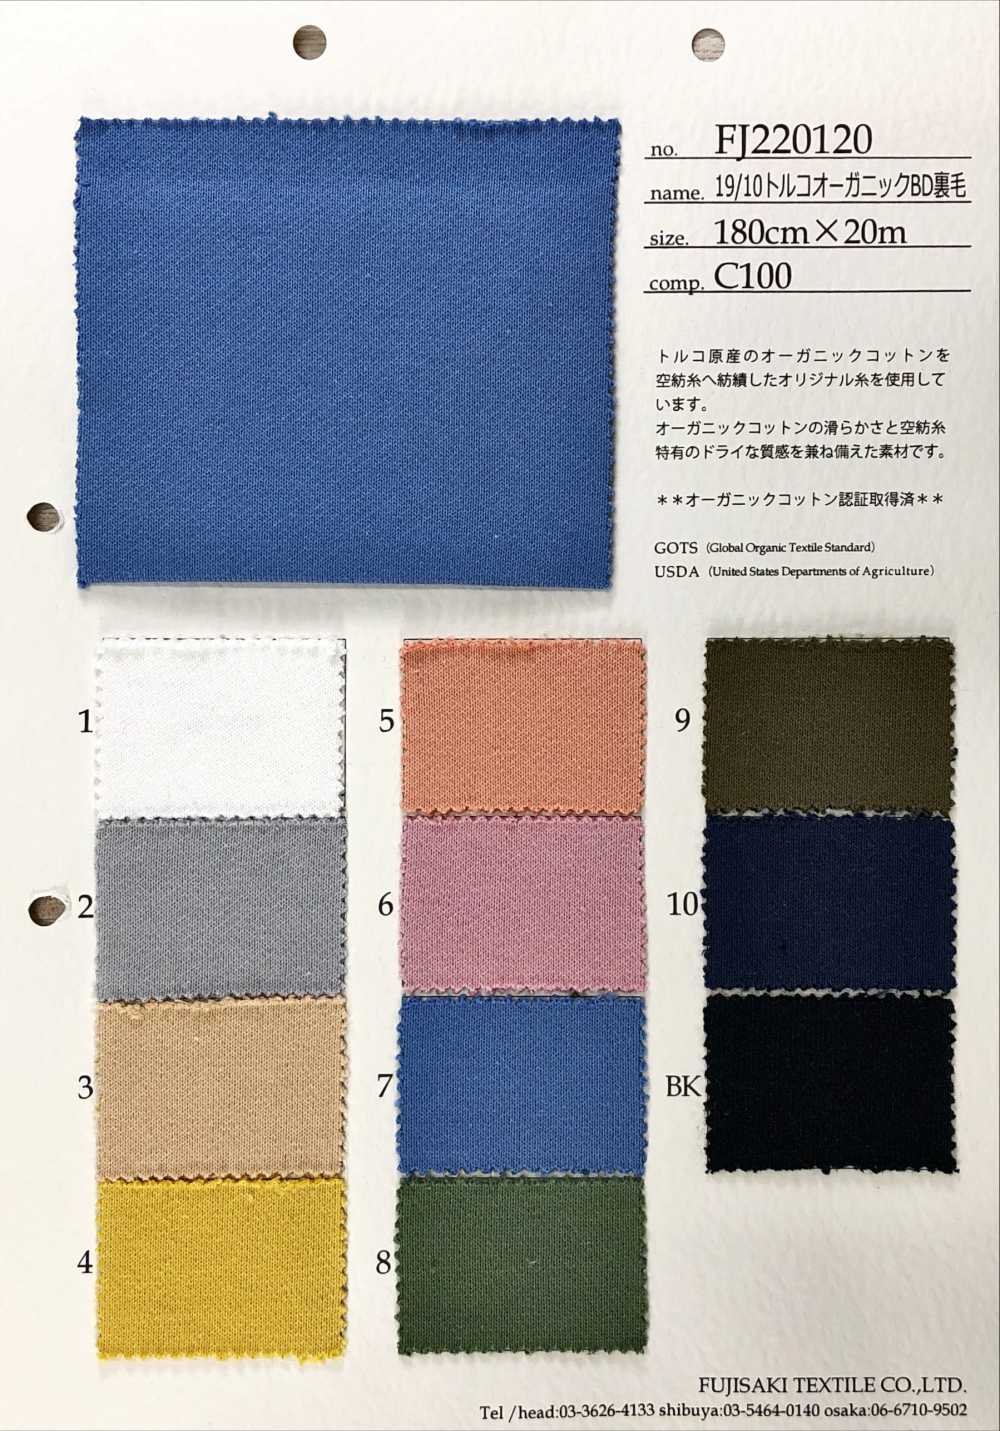 FJ220120 19/10 Lông Vải Thun Nỉ BD Hữu Cơ Thổ Nhĩ Kỳ Fujisaki Textile